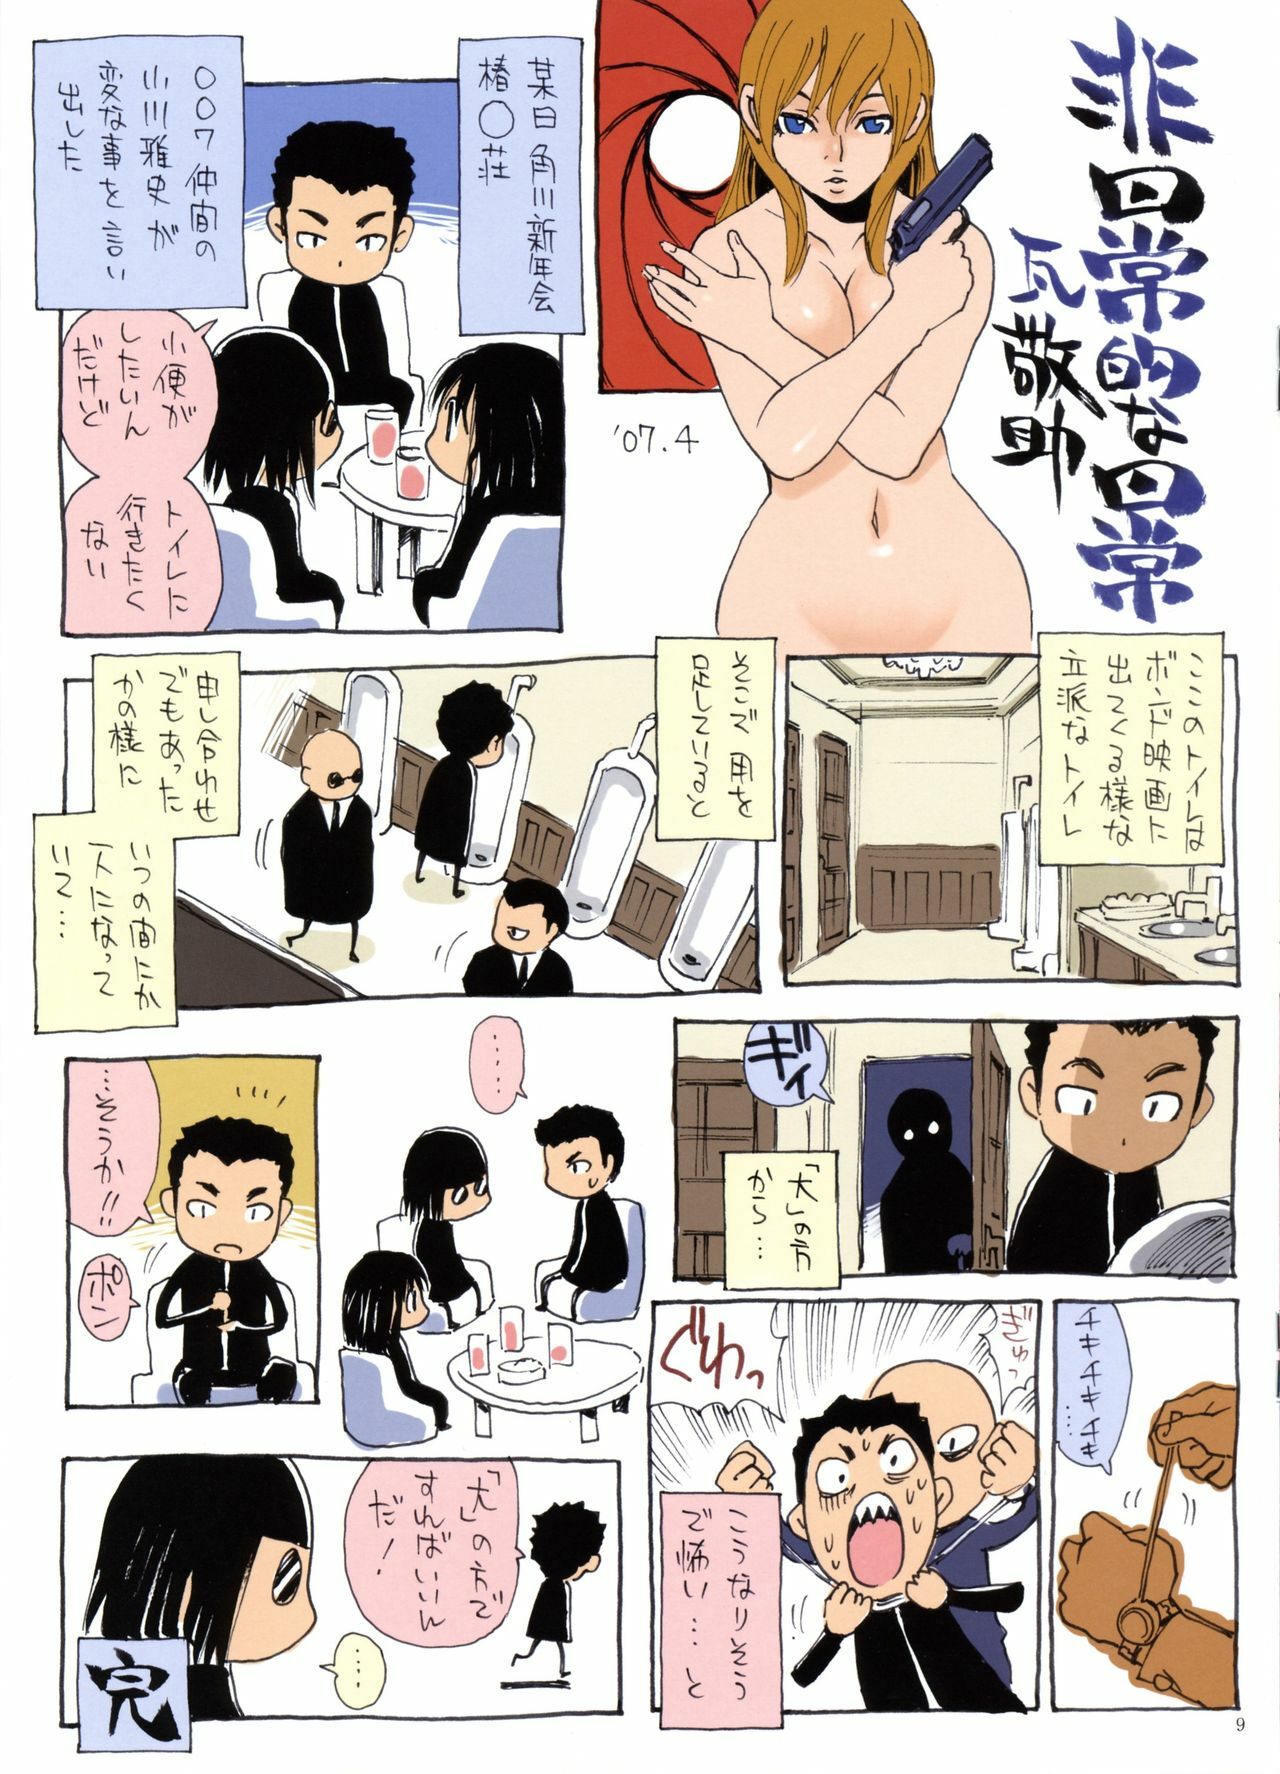 (COMIC1) [NOUZUI MAJUTSU, NO-NO'S (Kanesada Keishi, Kawara Keisuke)] ESPRESSO page 9 full